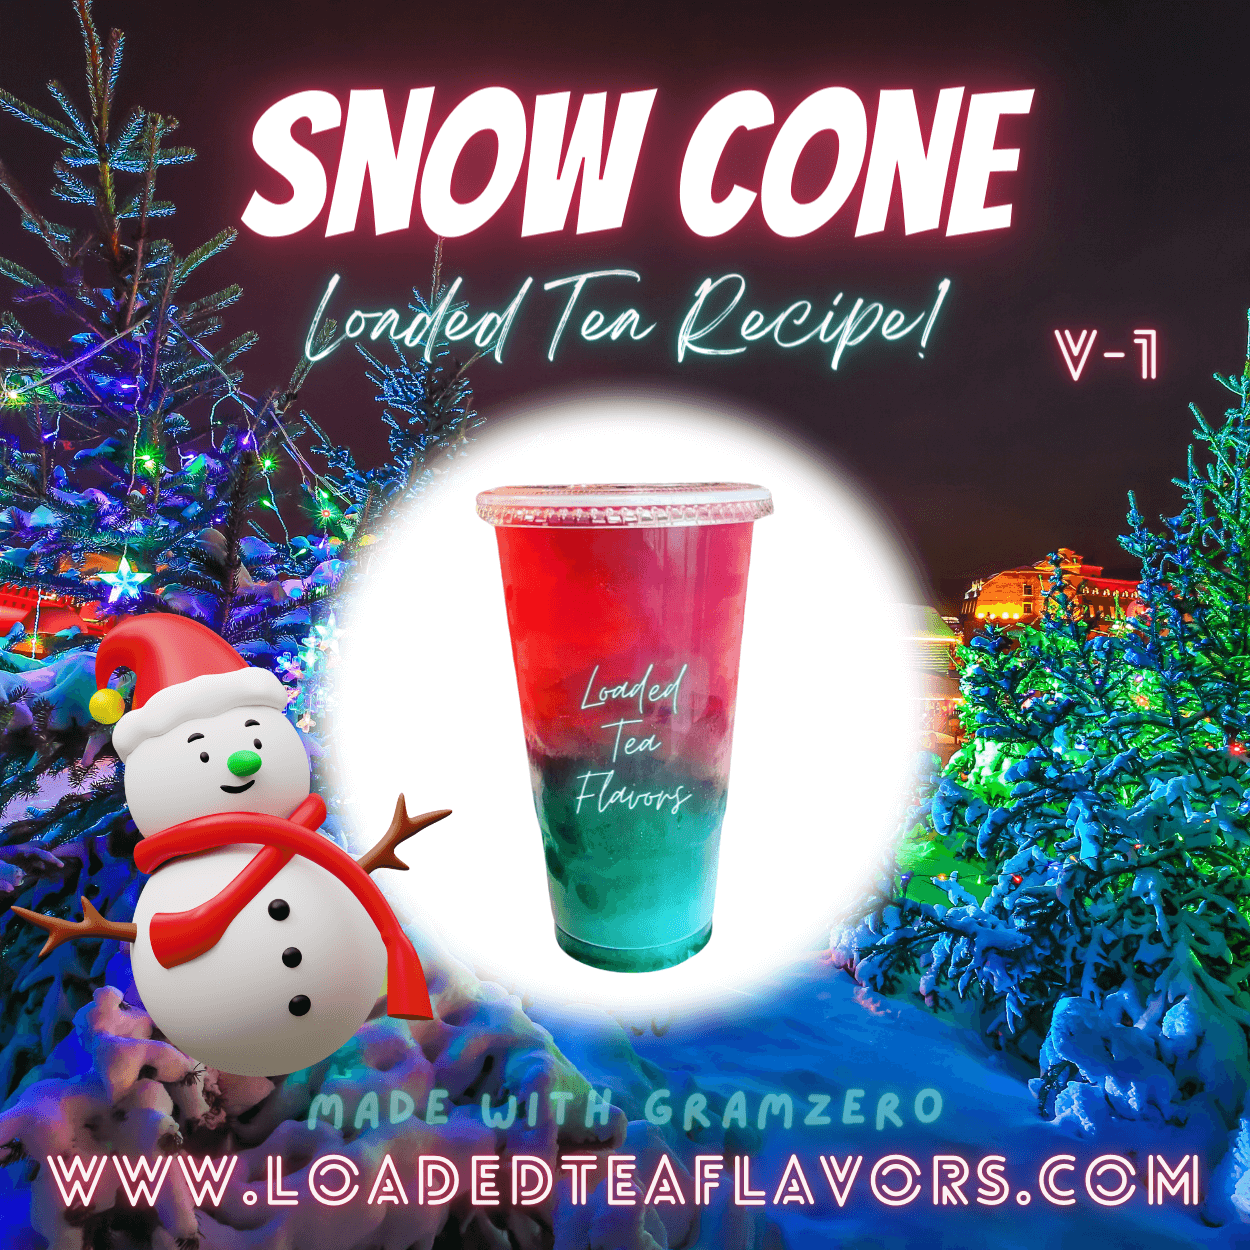 Snow Cone V1 Flavored ⛄🍧 Loaded Tea Recipe